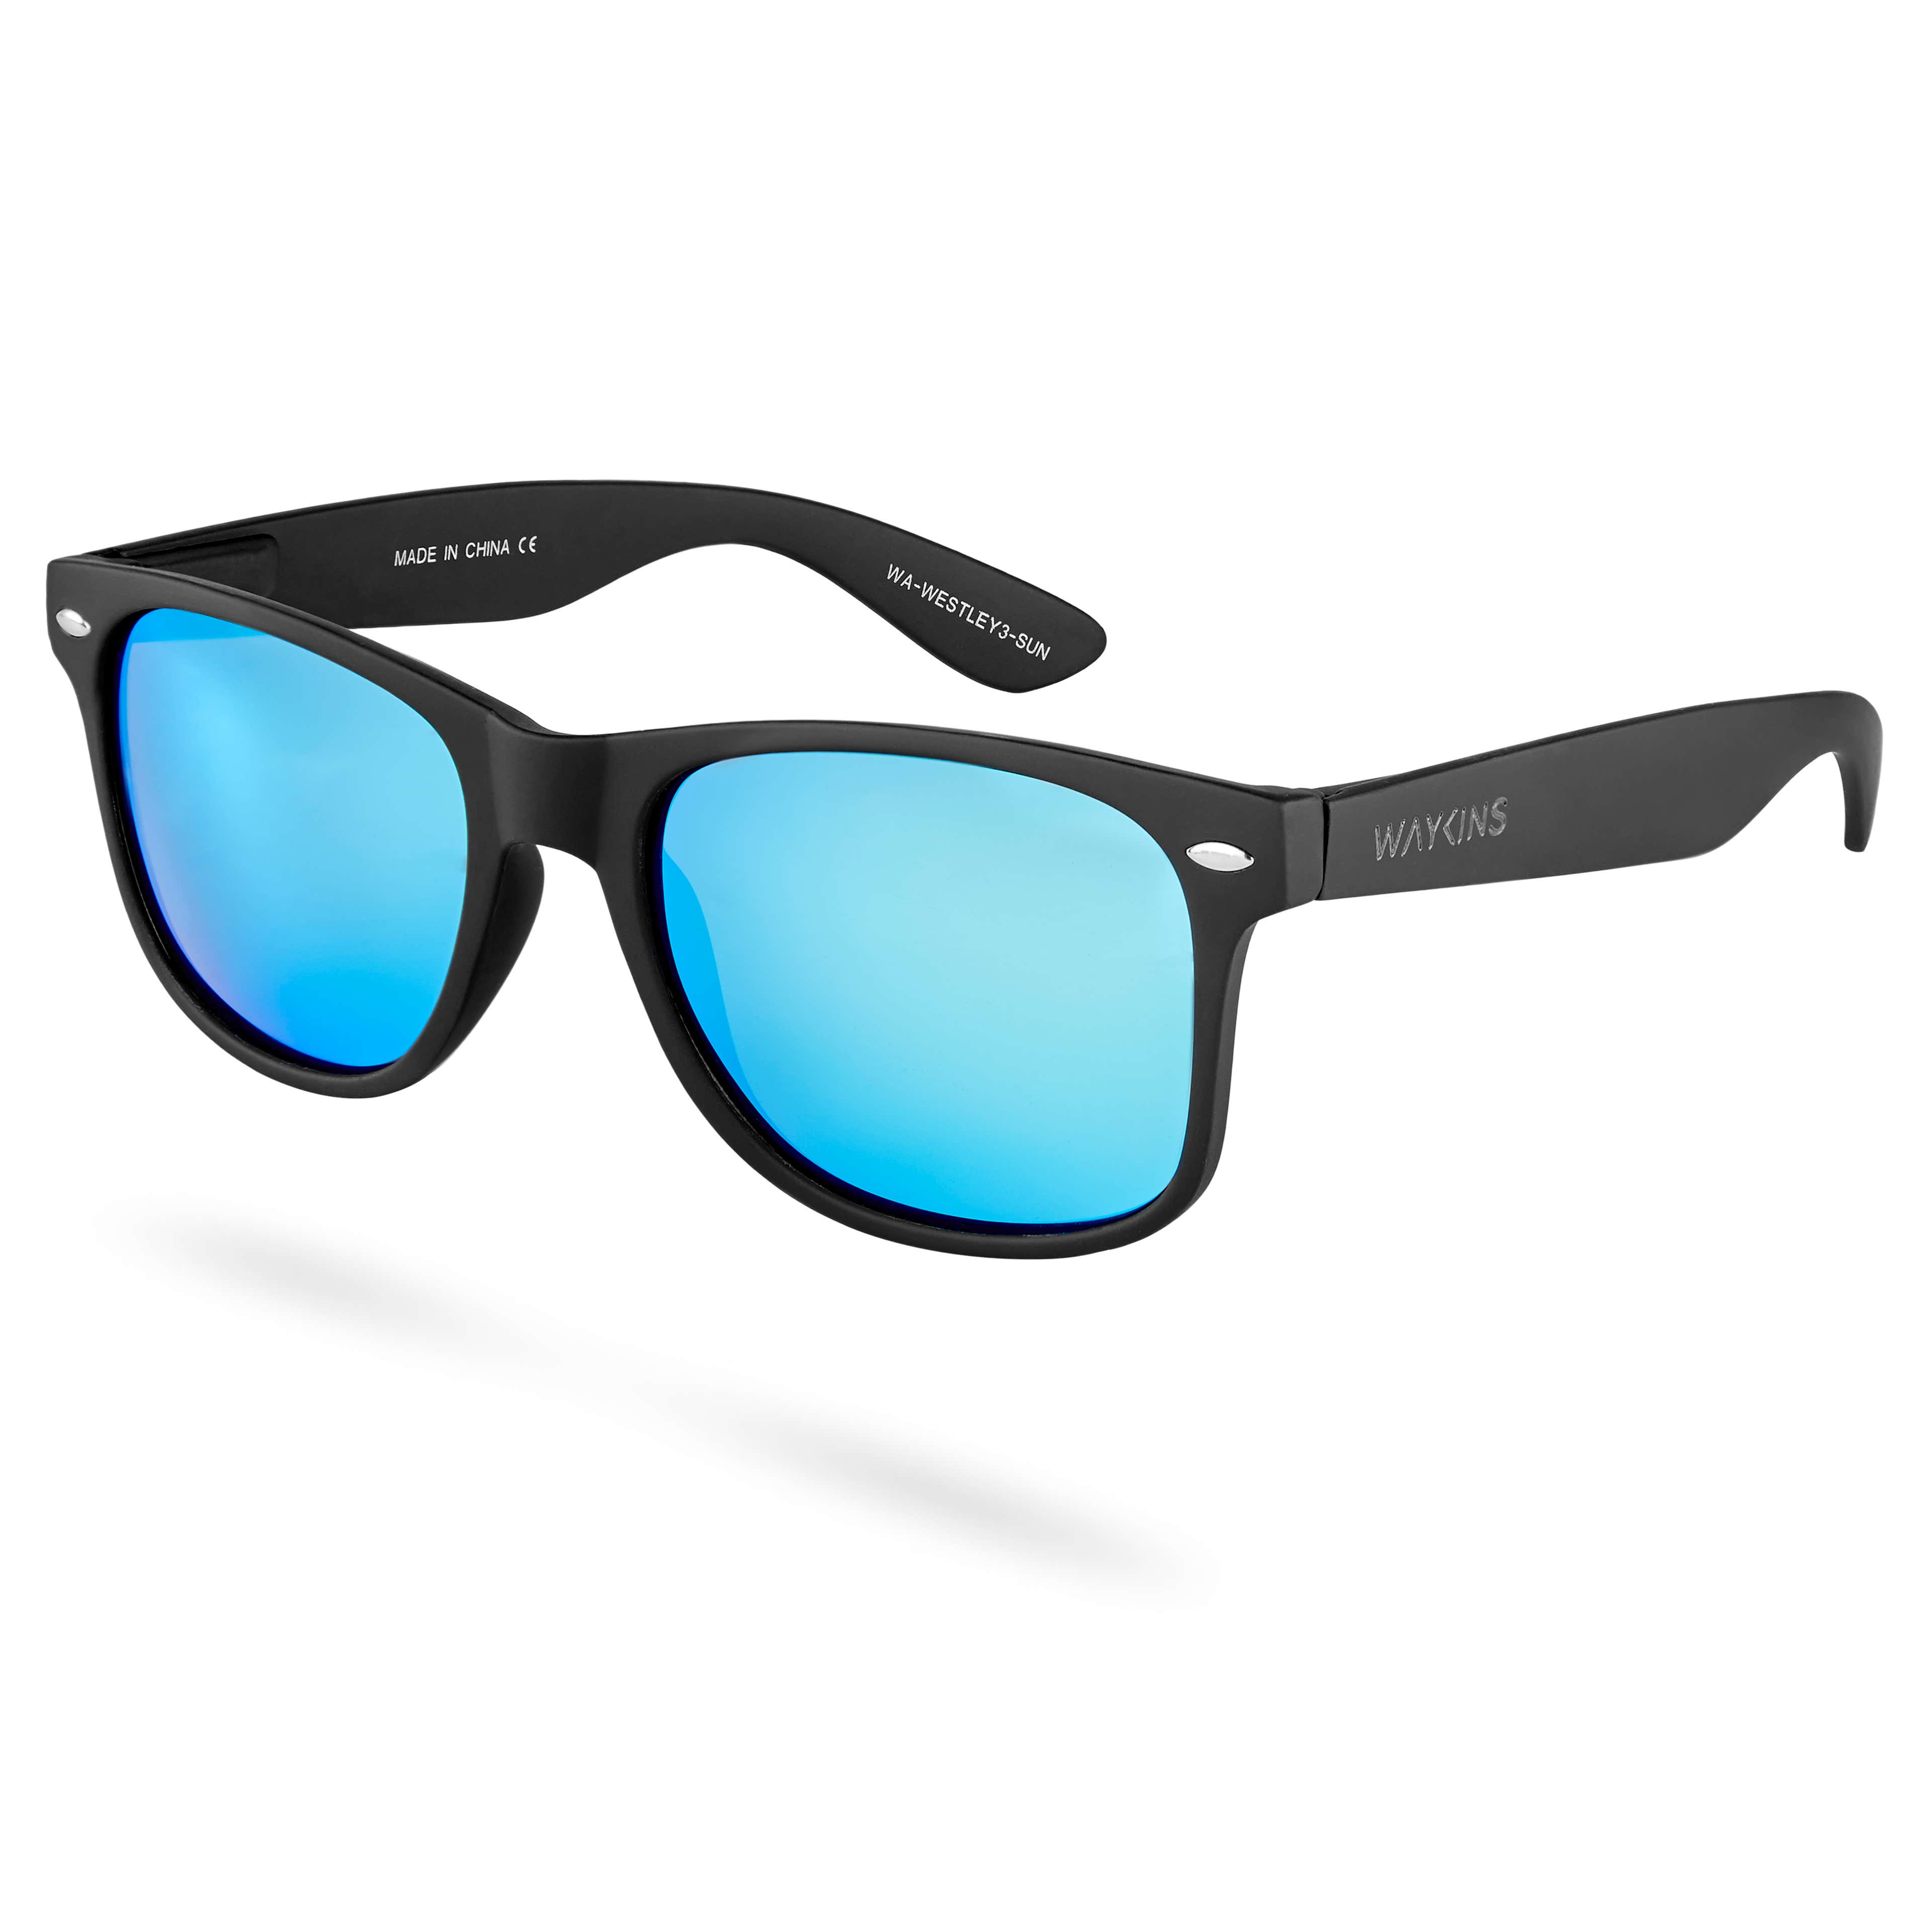 Westley Blue-Mirror Vista Sunglasses